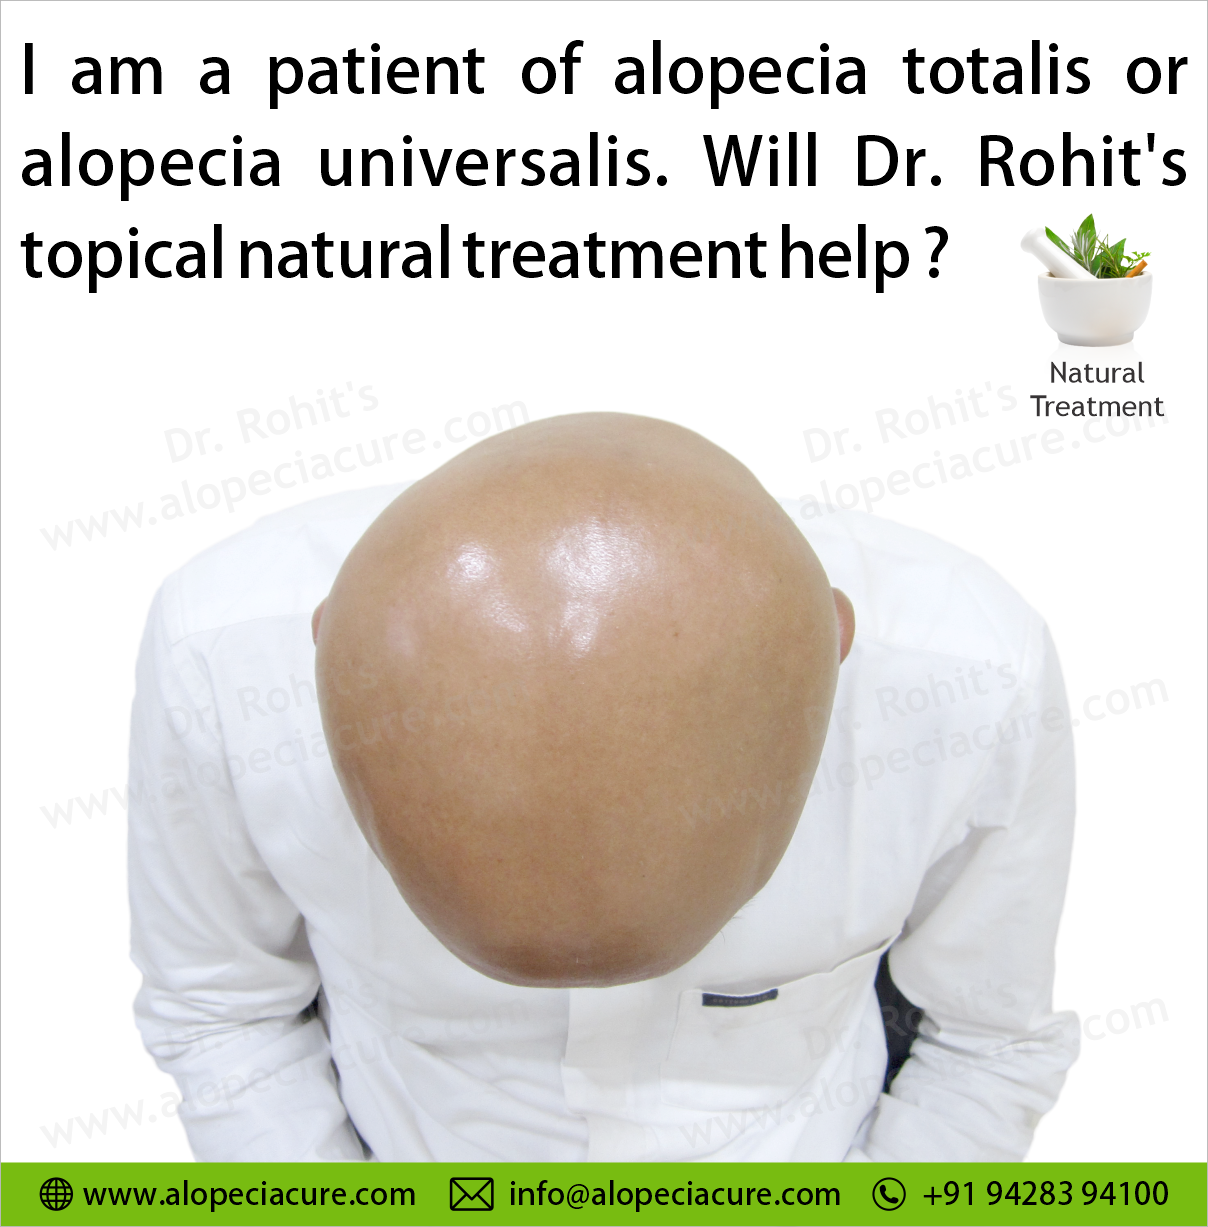 Alopecia totalis or alopecia universalis